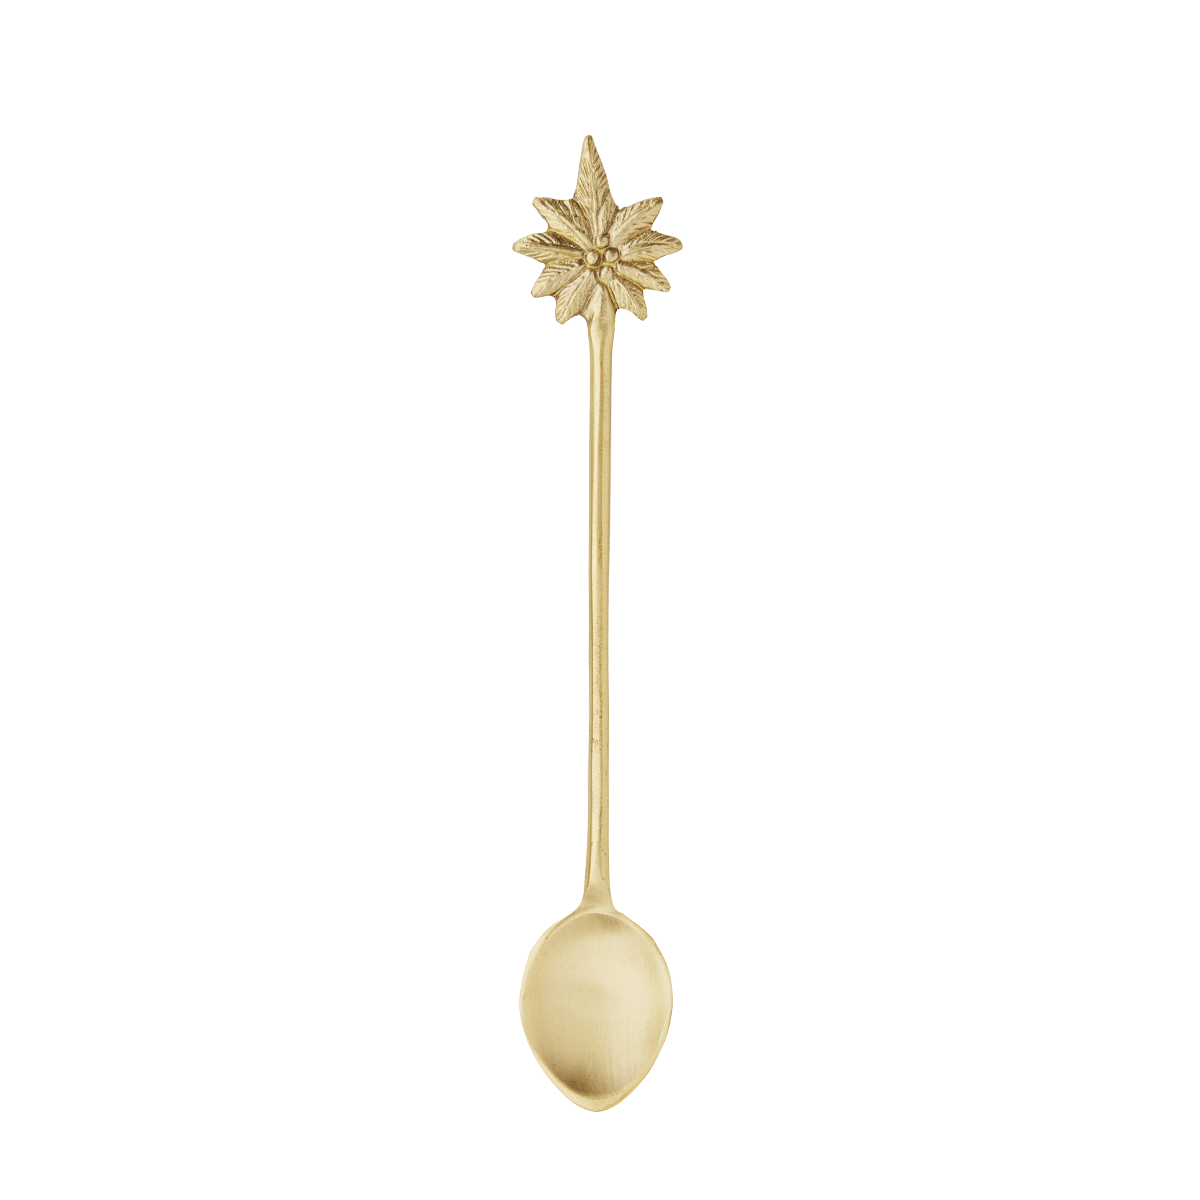 Spoon w/ palm